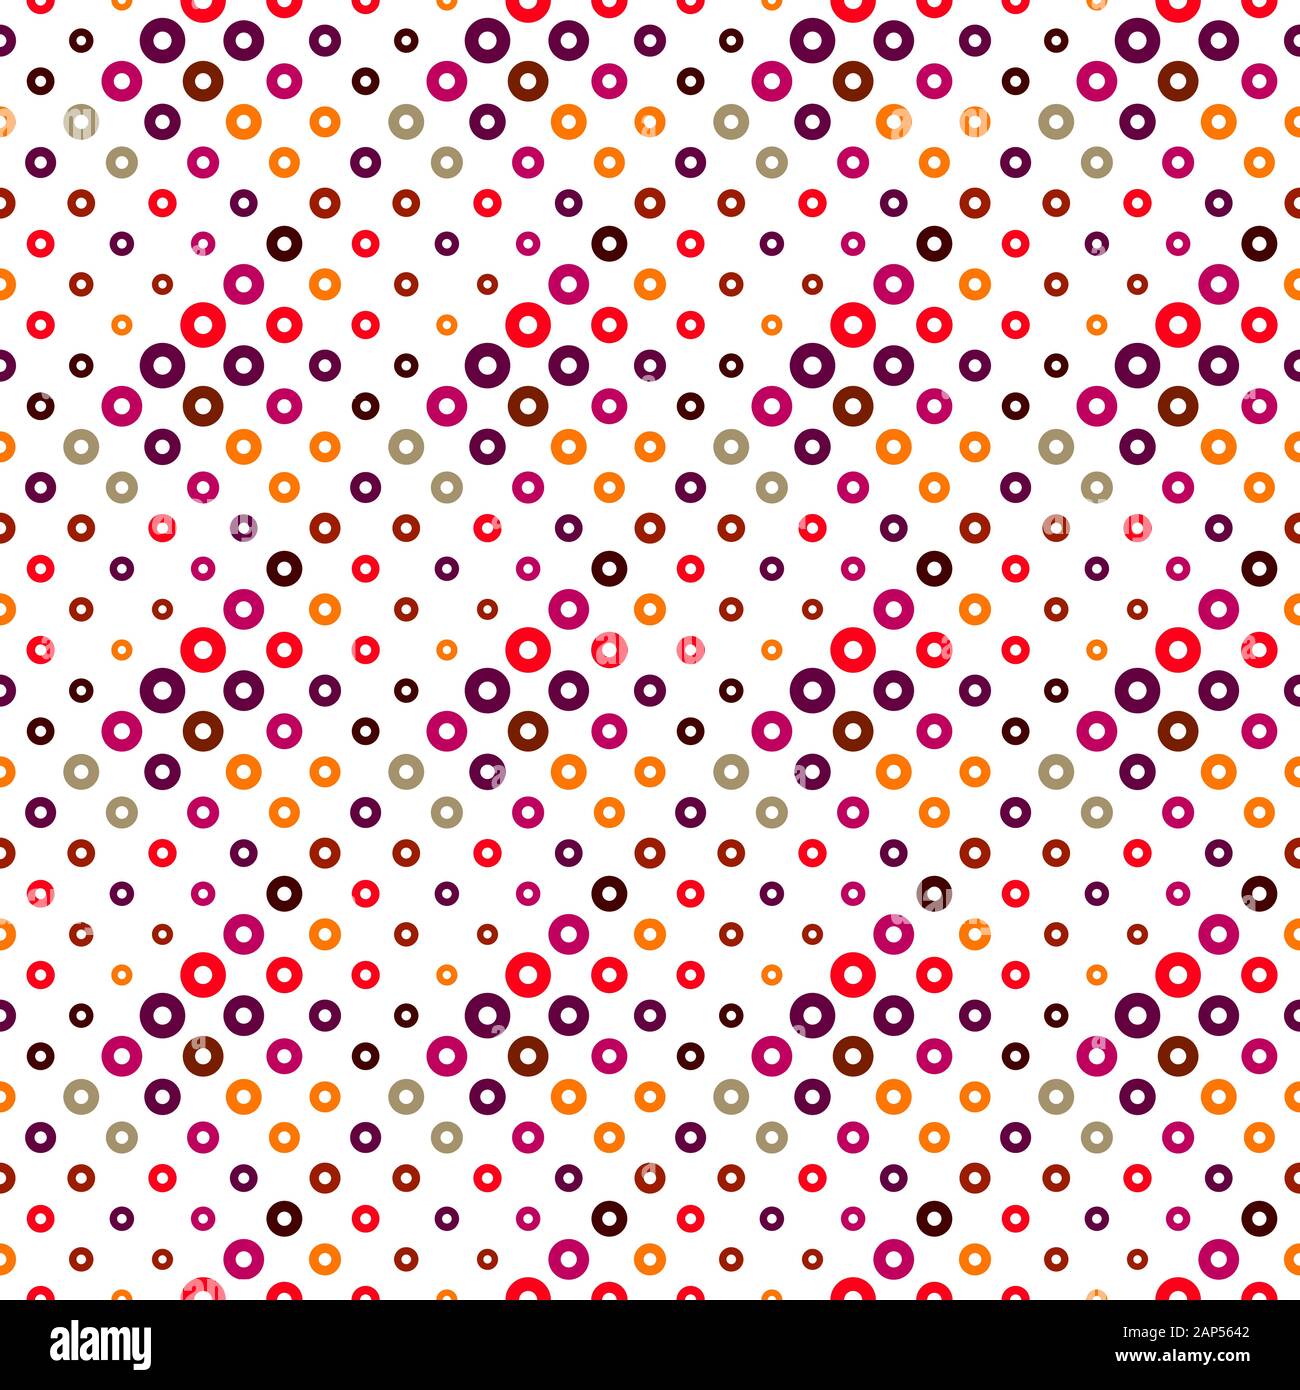 Bague transparente motif de fond - abstract vector illustration géométrique colorée Illustration de Vecteur